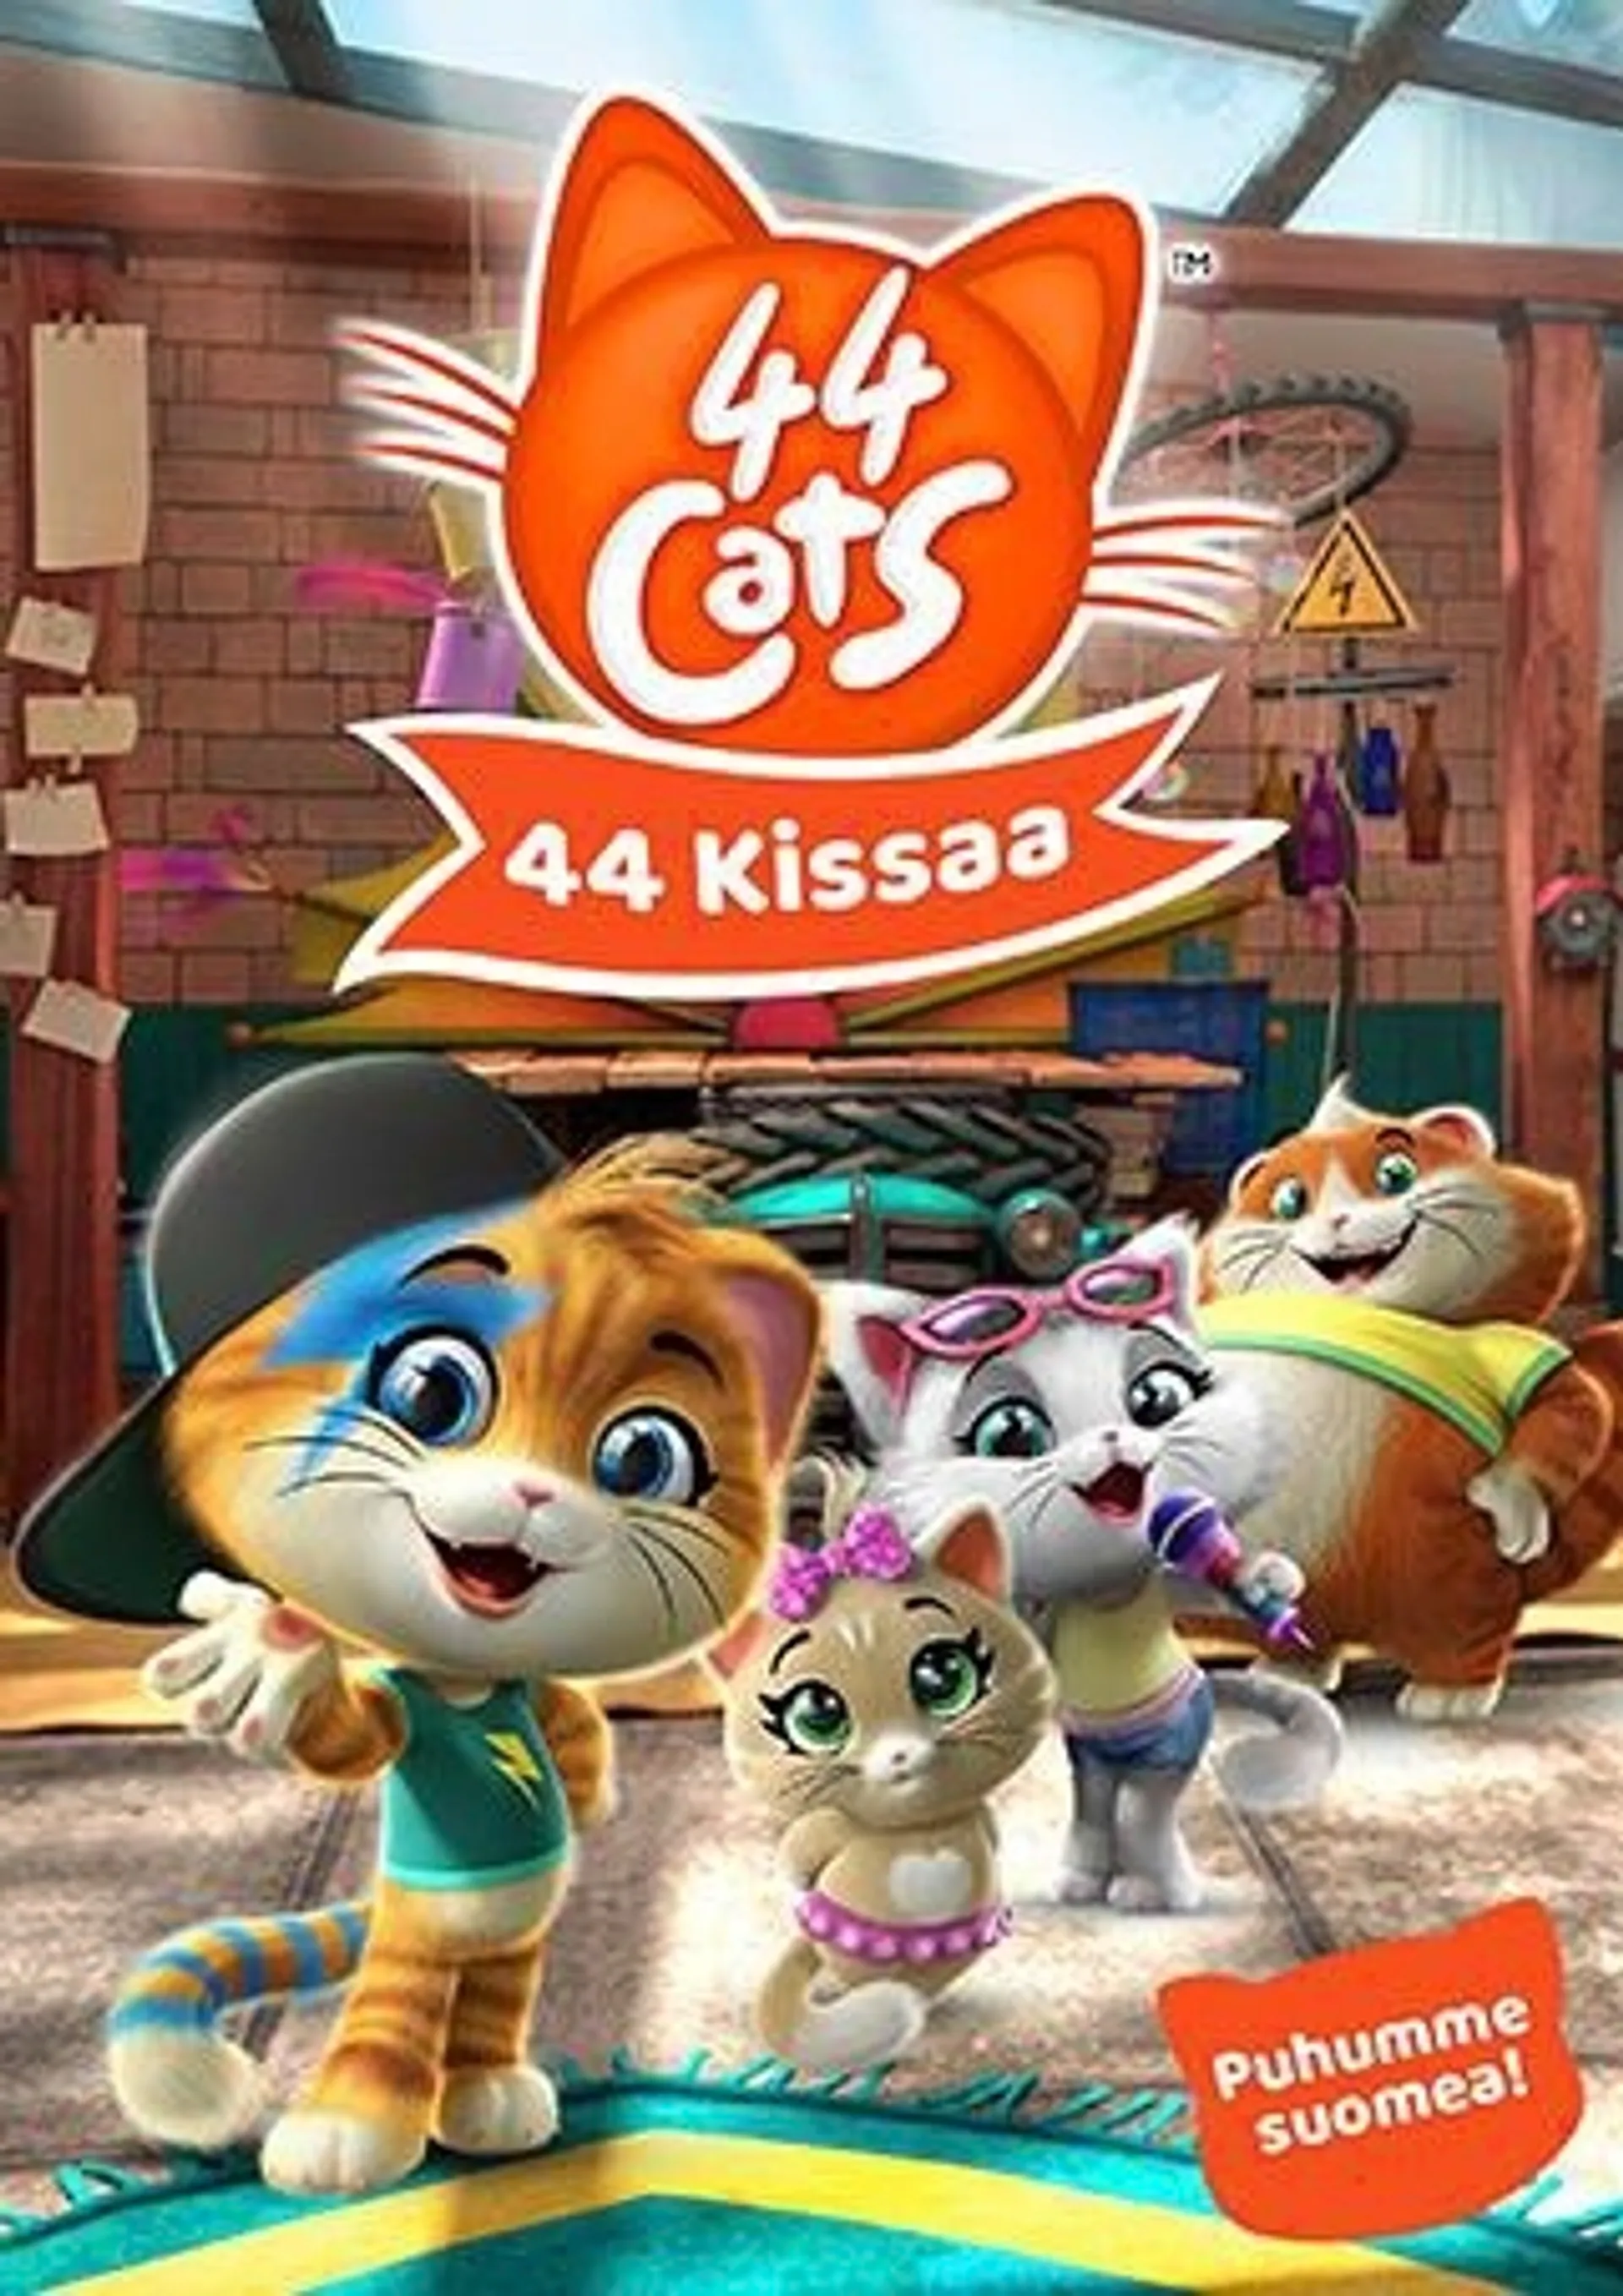 44 Cats 2 - 44 Kissaa DVD